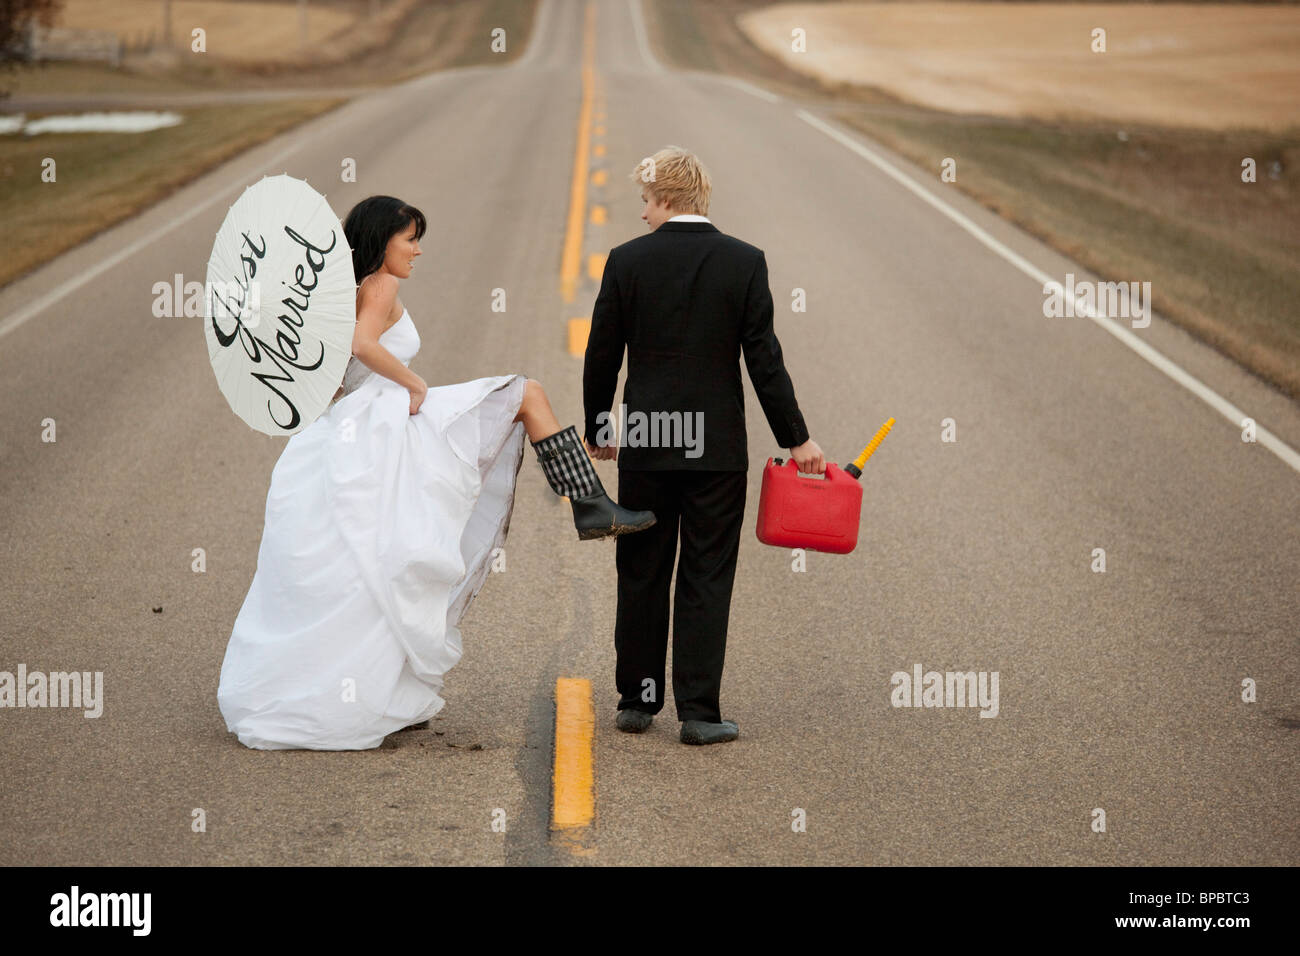 drei Hügel, Alberta, Kanada; spazieren auf einer ländlichen Straße mit einem Kanister und einem Sonnenschirm sagen "just married" Braut und Bräutigam Stockfoto